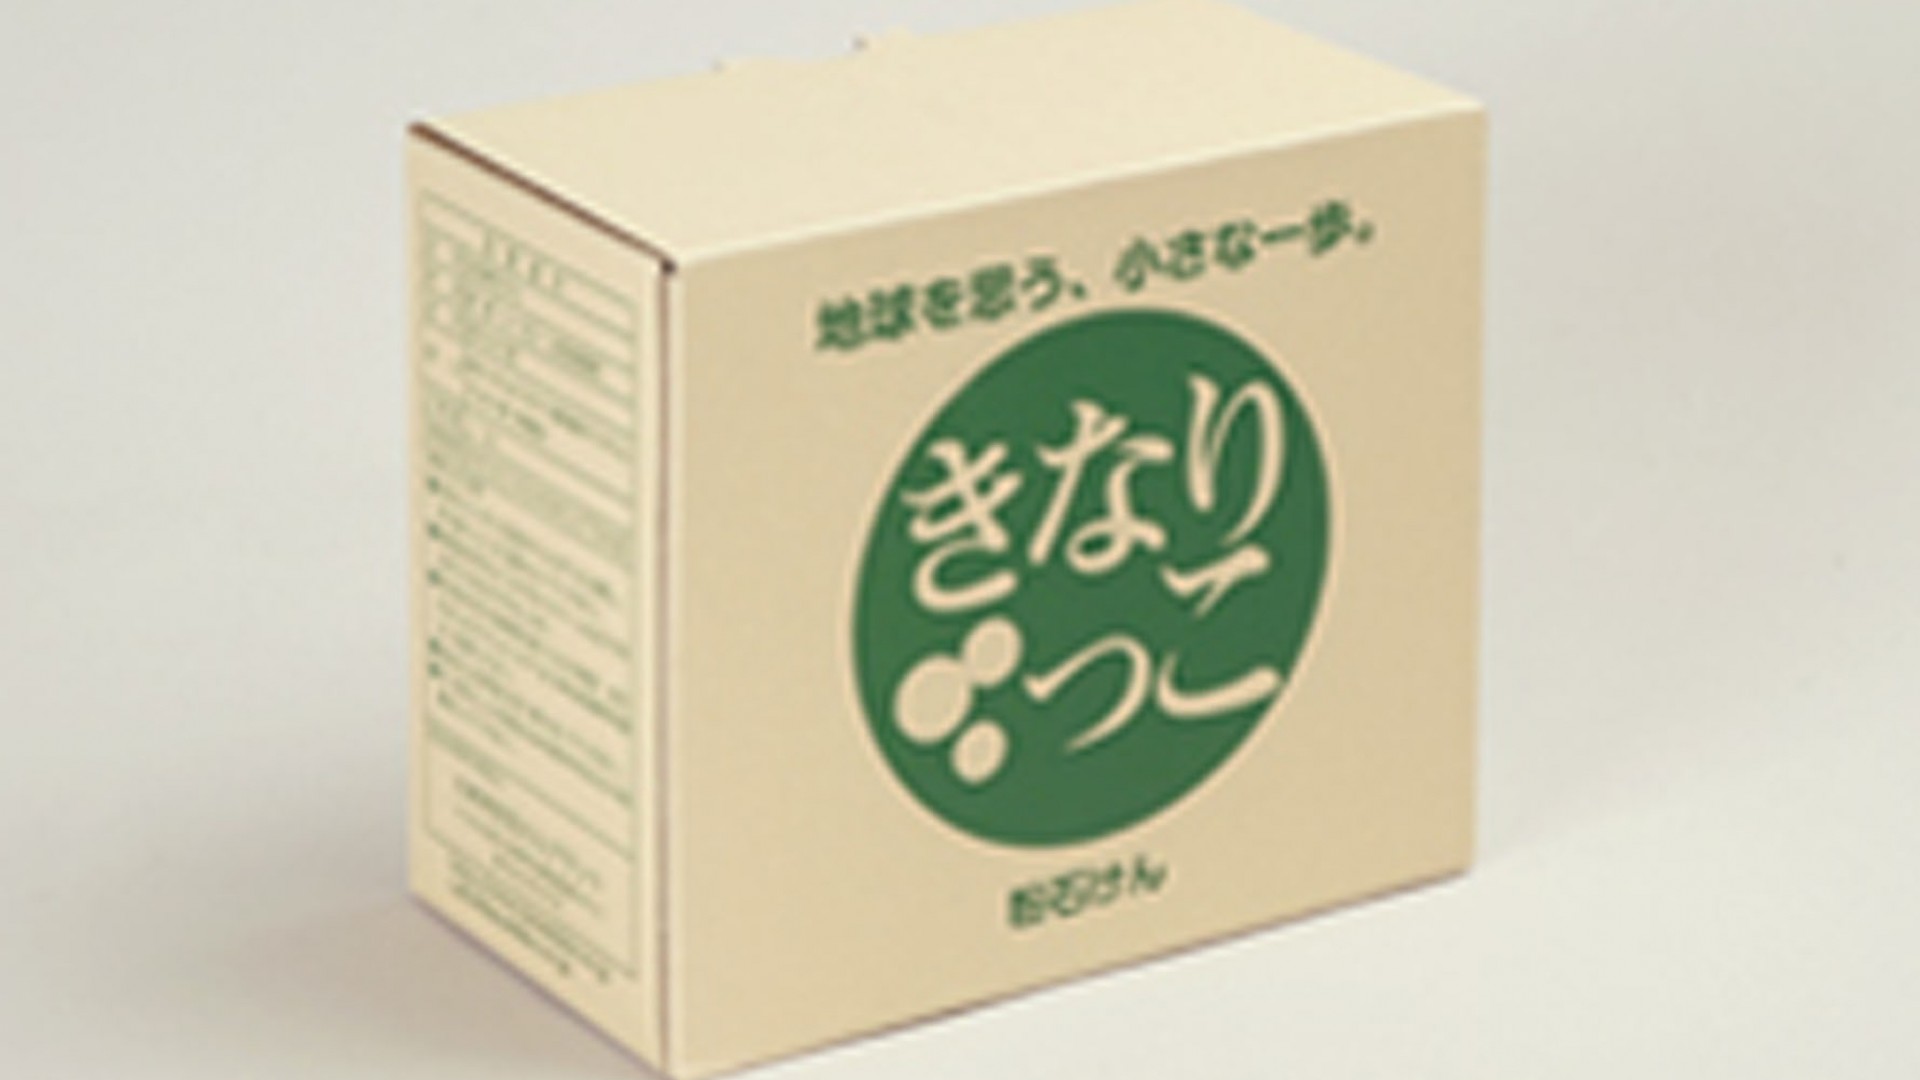 Usine de savon de Kawasaki